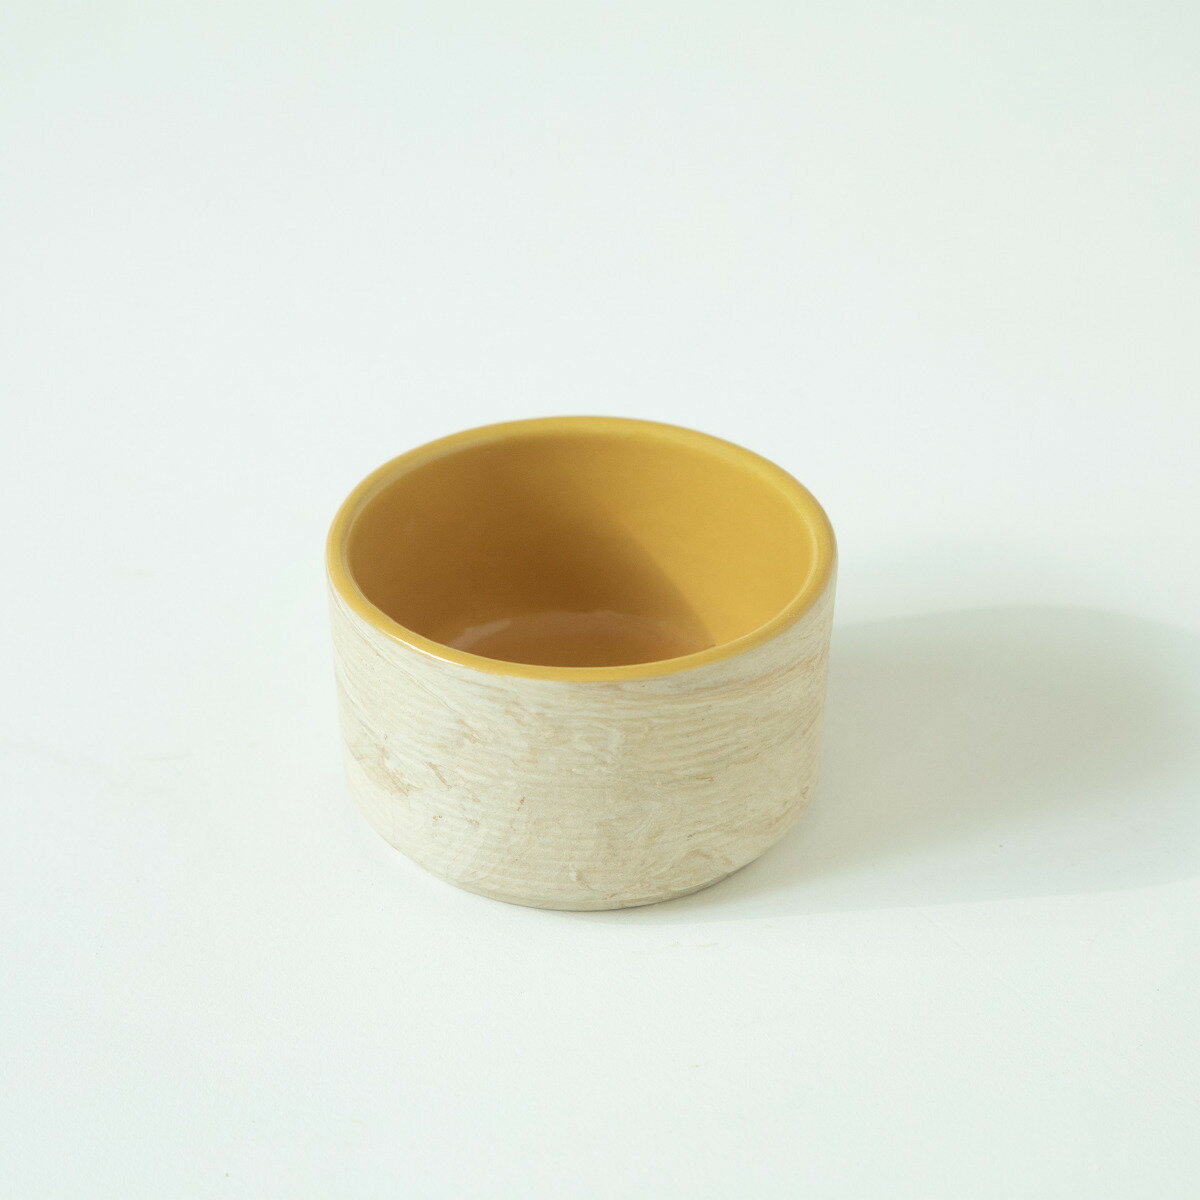 アンバーラブ セラミック ボウル / Amber Love Ceramic Bowl (送料無料 | Free Shipping)